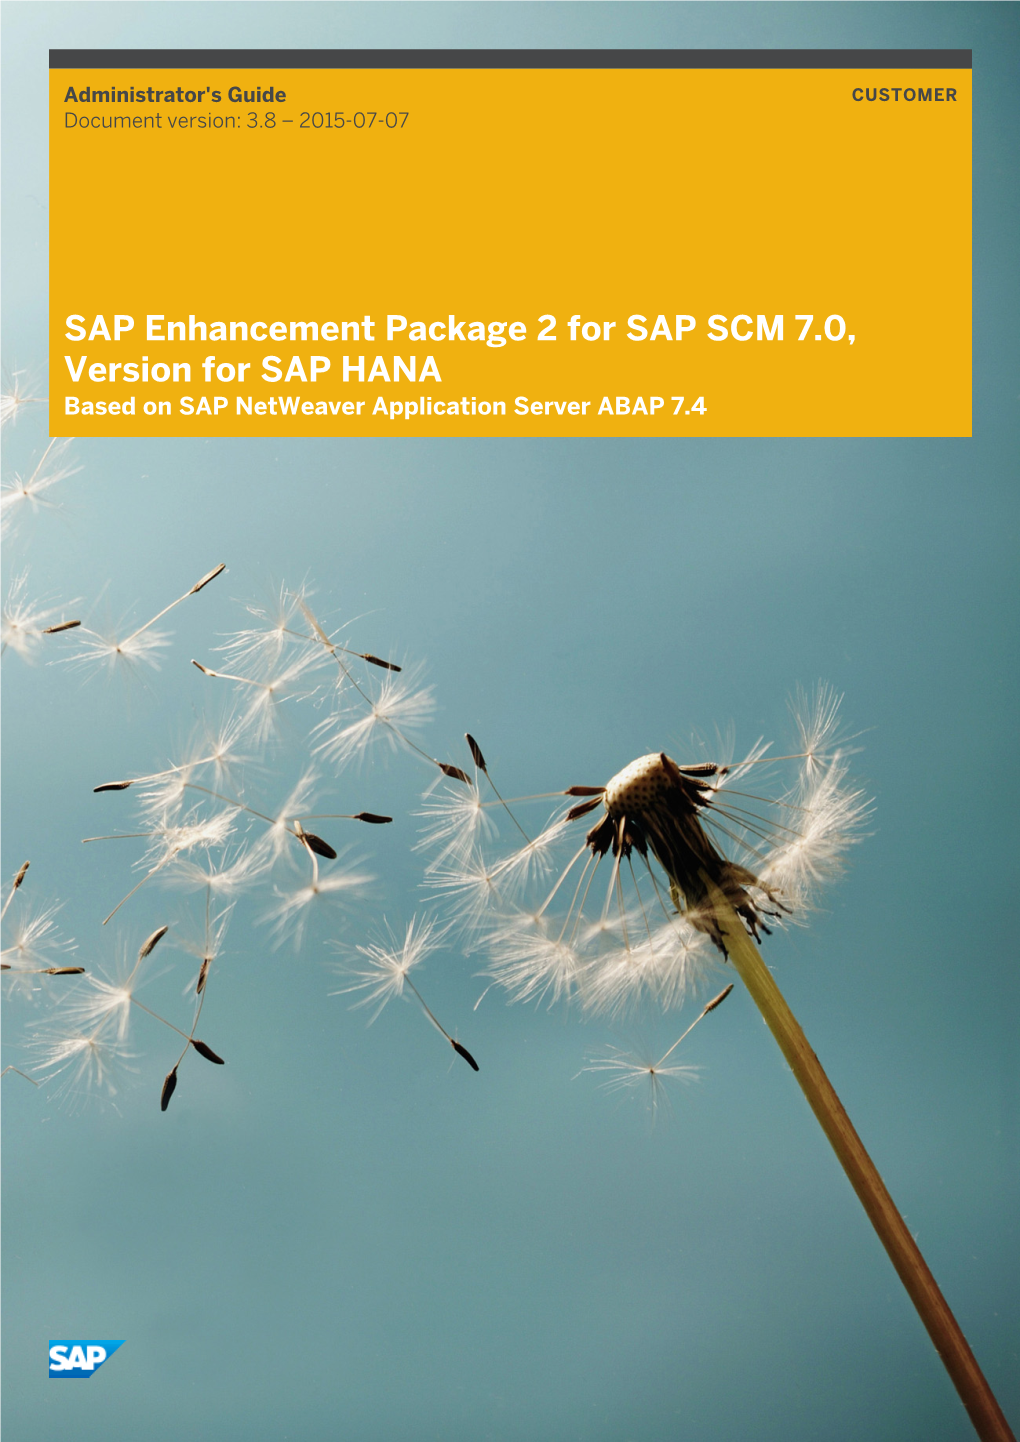 SAP Enhancement Package 2 for SAP SCM 7.0, Version for SAP HANA Based on SAP Netweaver Application Server ABAP 7.4 Document History